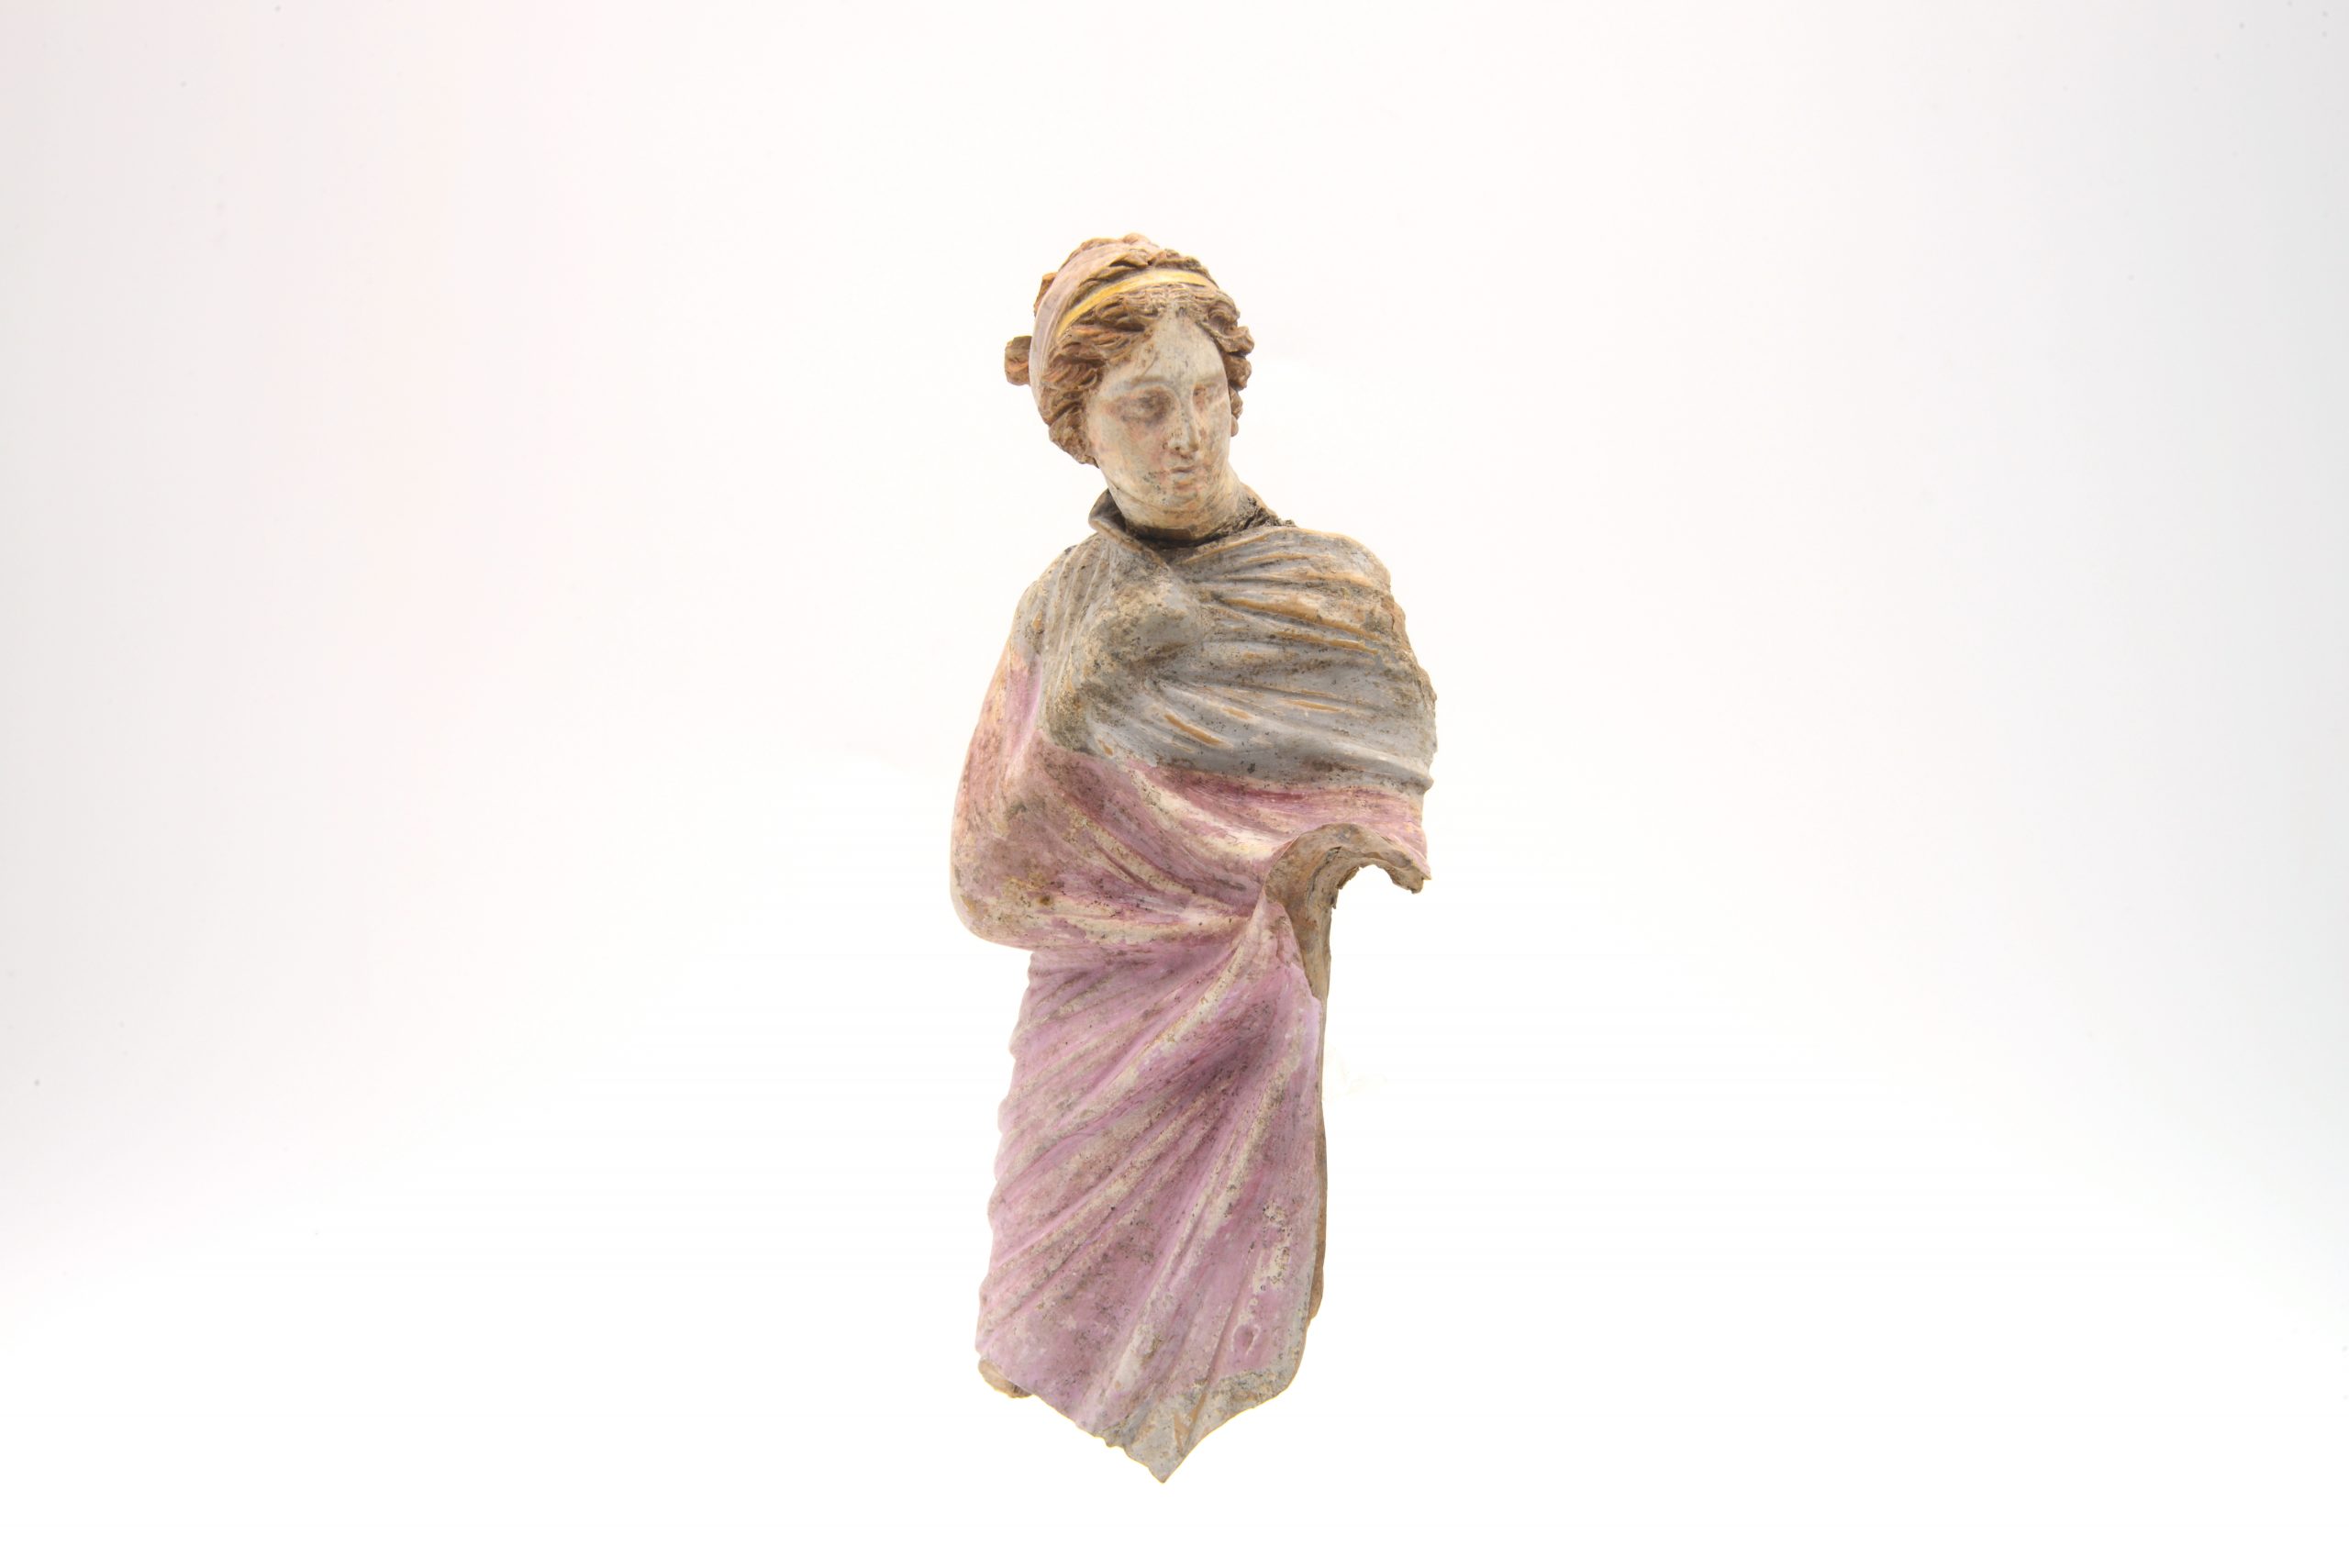 Reperto in viaggio – Statuetta in terracotta policroma III SEC A.C.